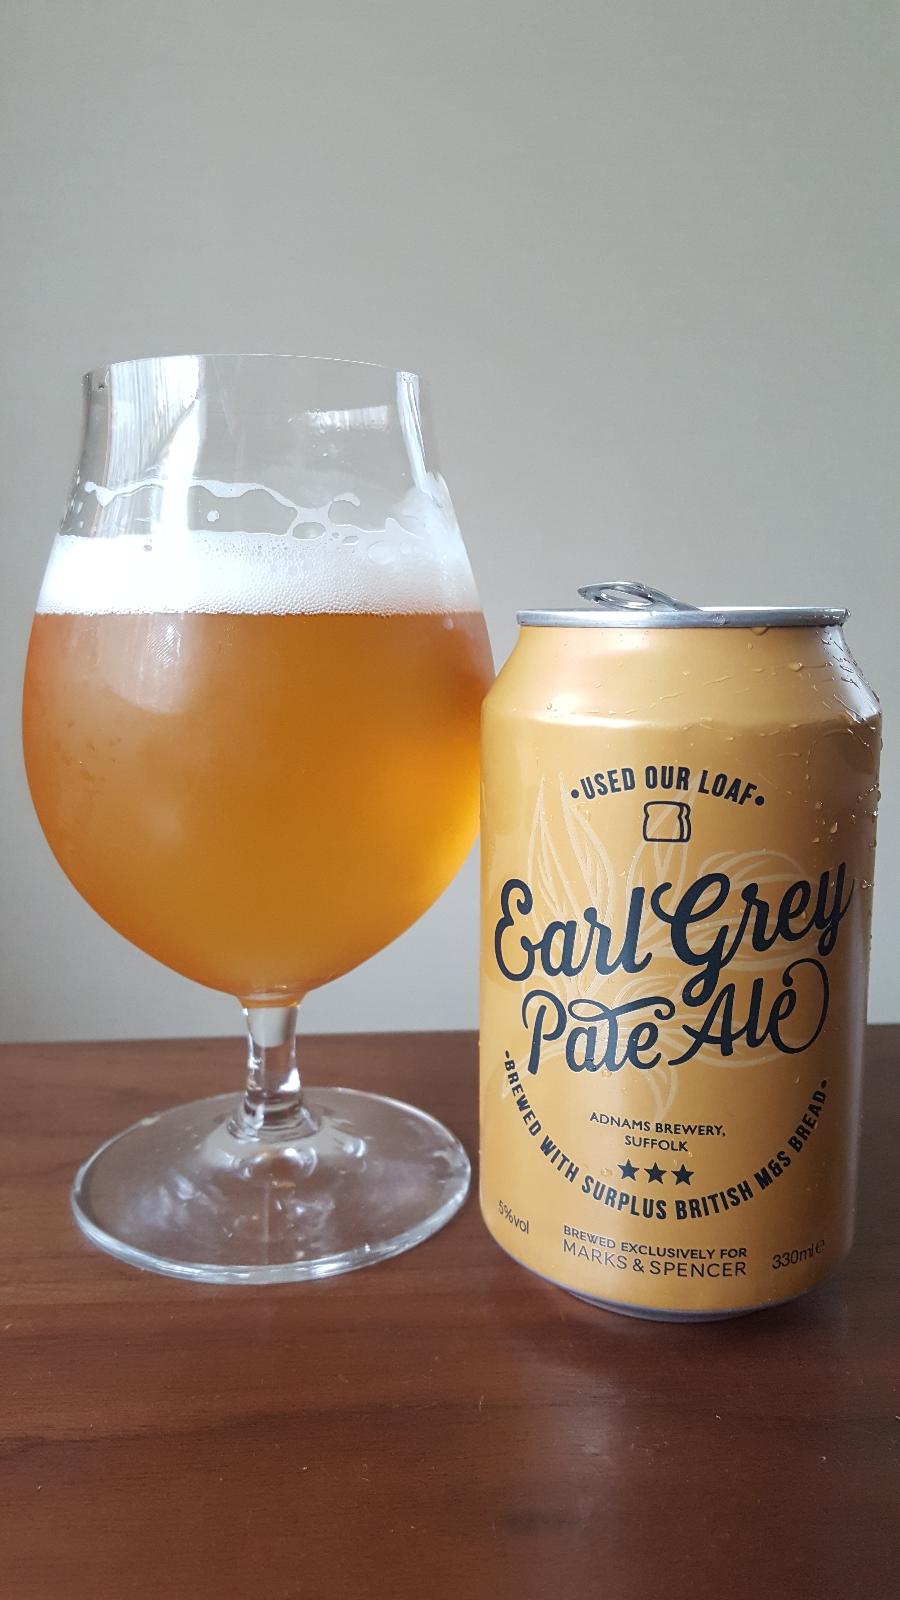 Earl Grey Pale Ale